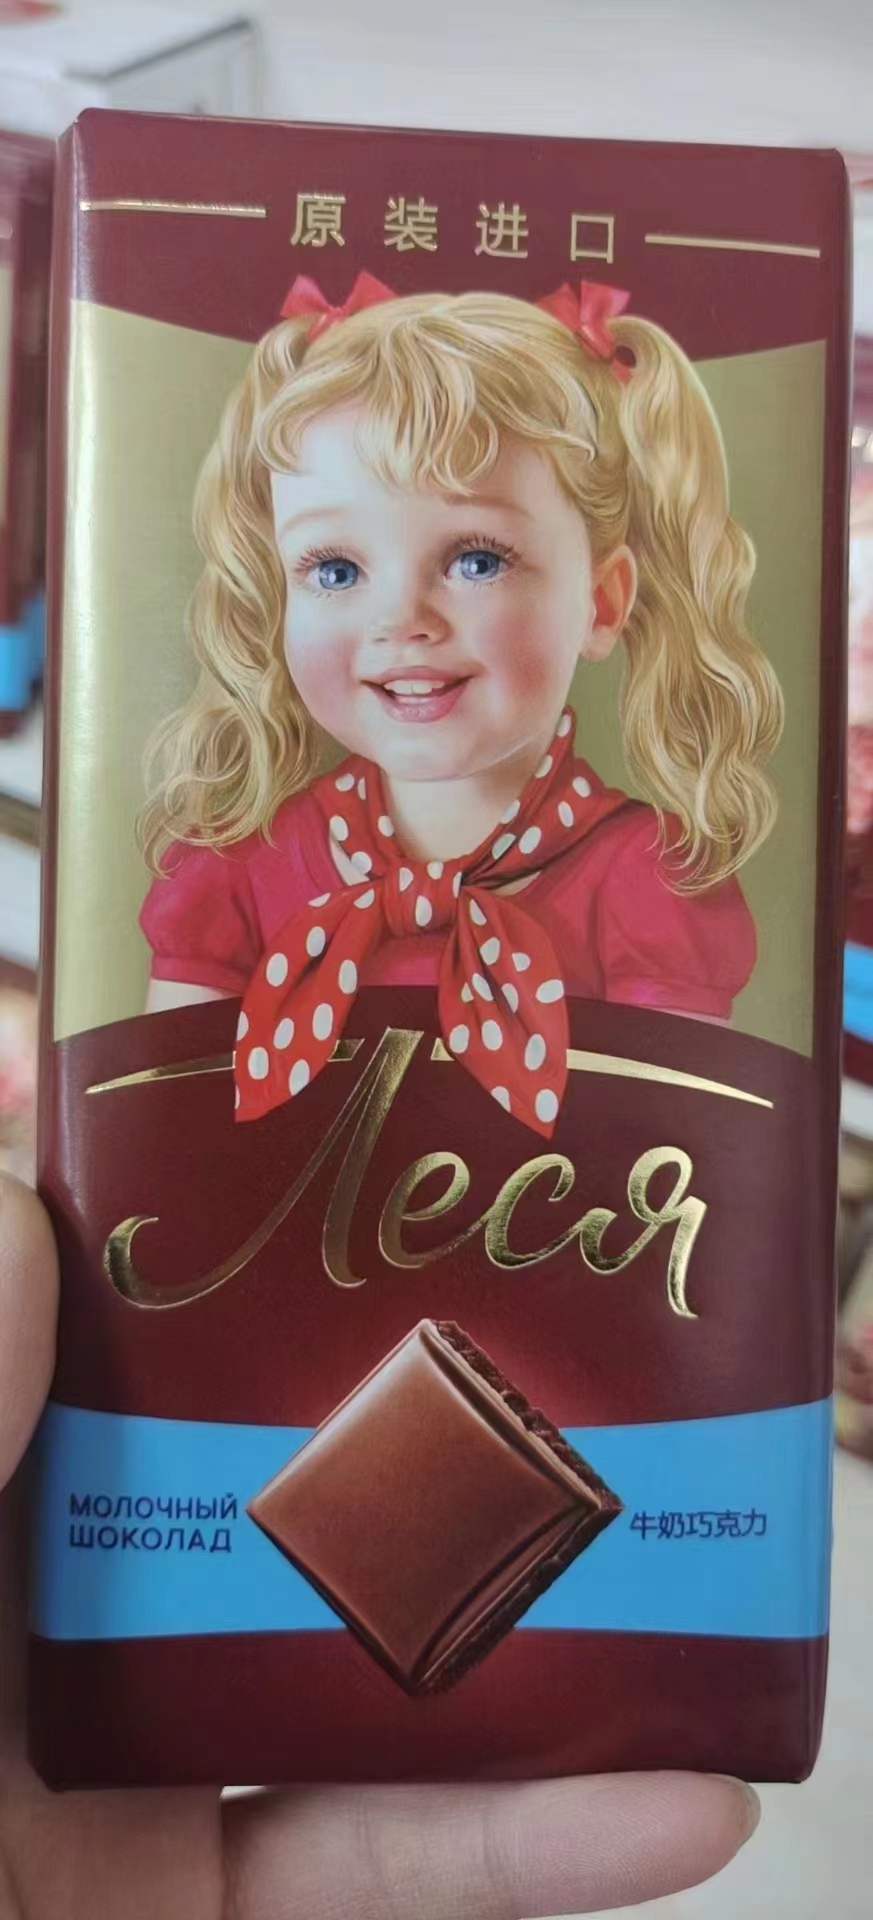 俄罗斯进口小烈夏巧克力进口巧克力